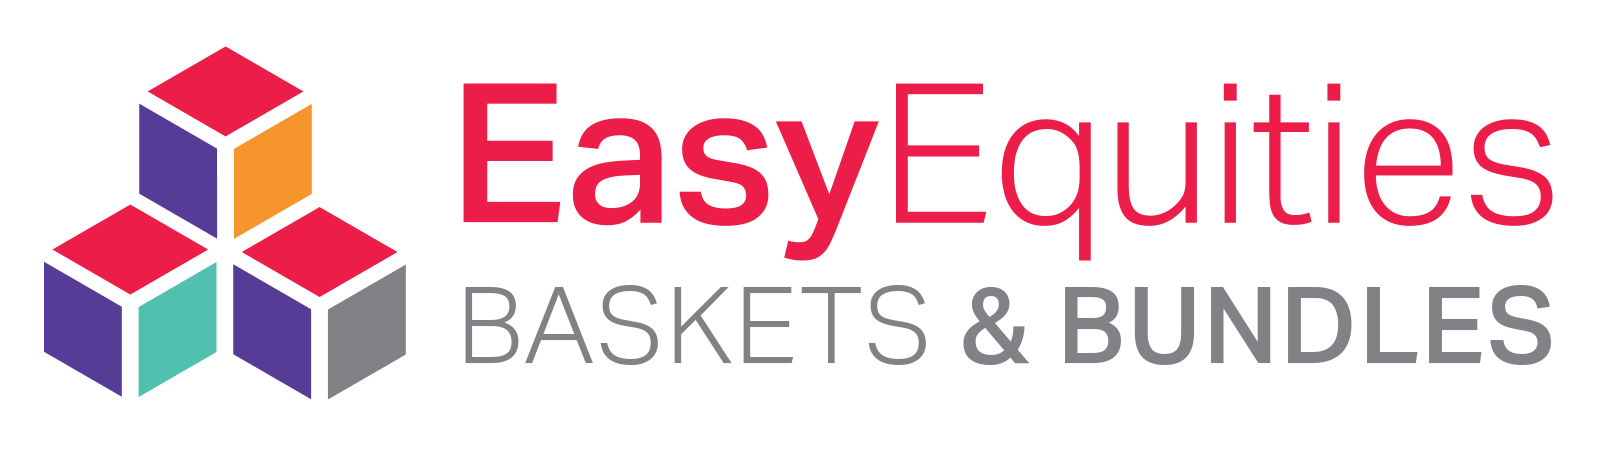 EE-Baskets-Bundles-logo